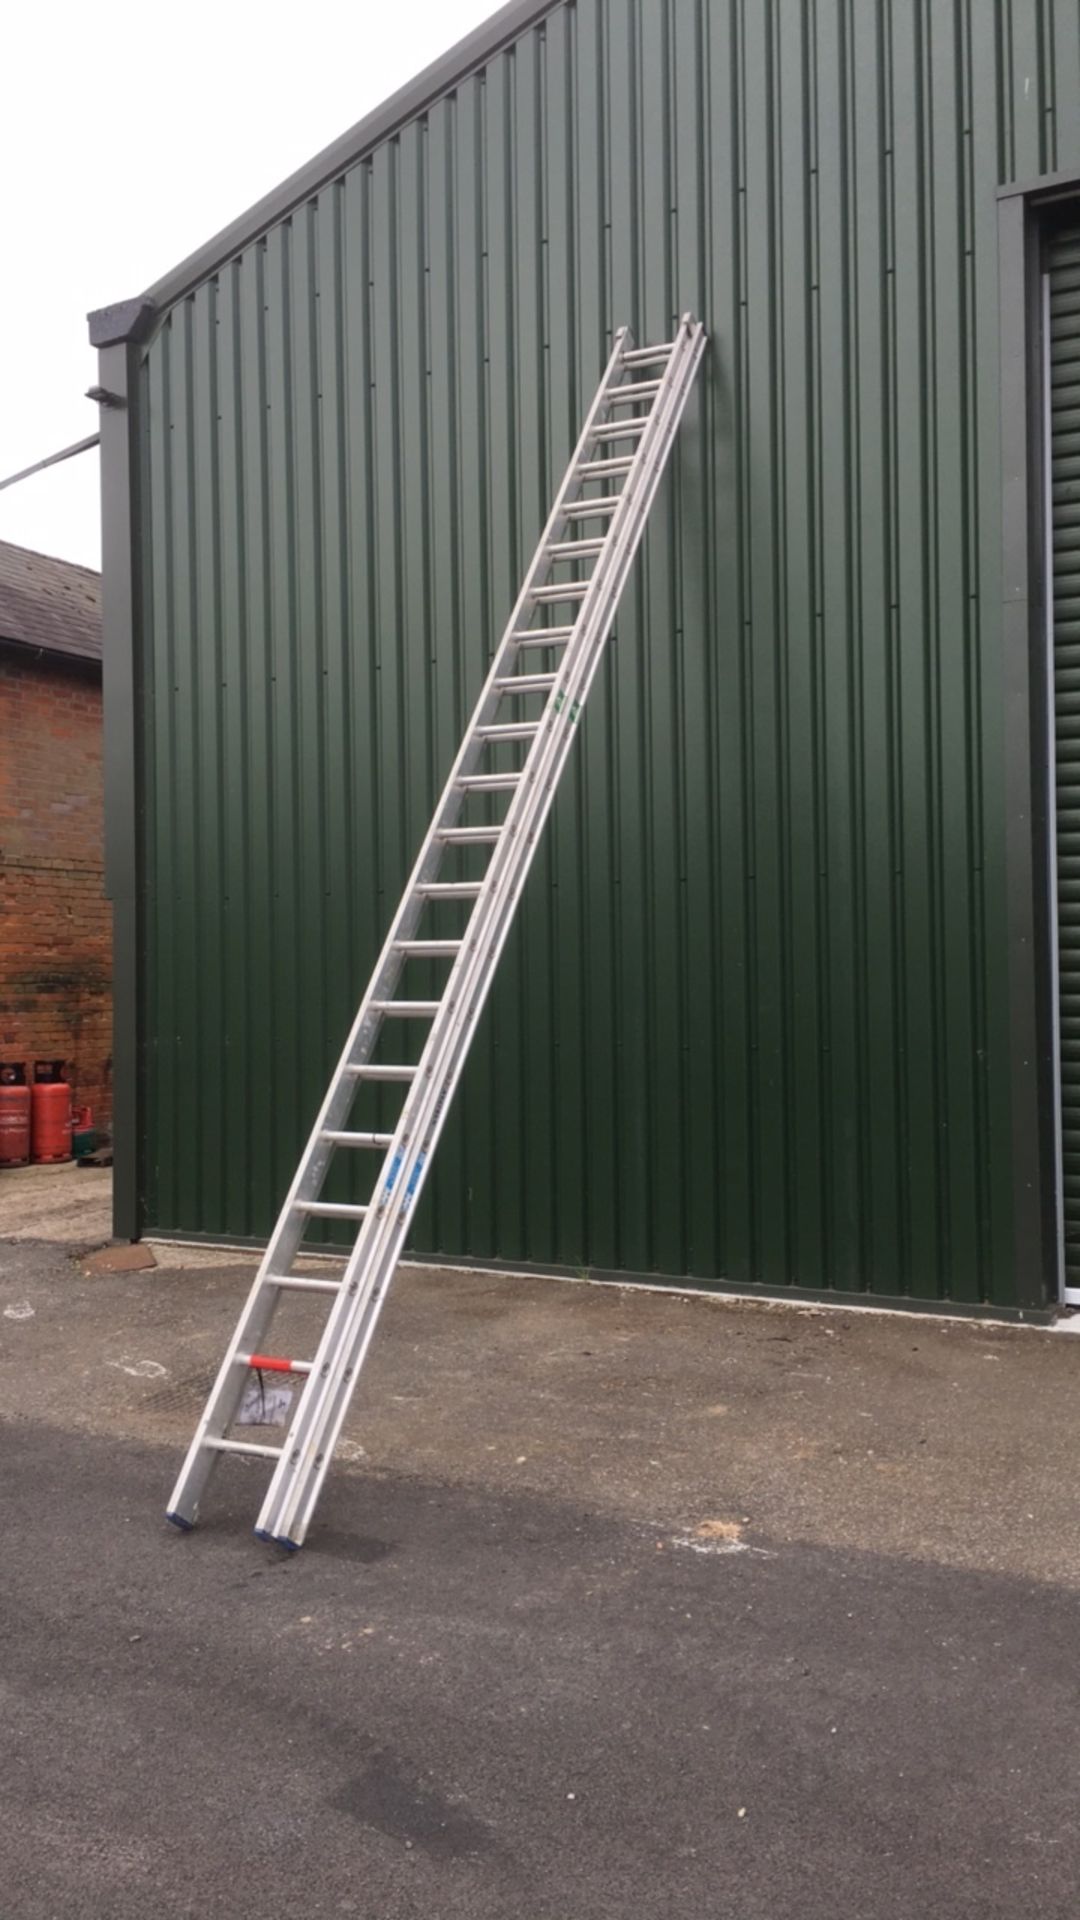 Clow aluminium extending ladder (A761866)